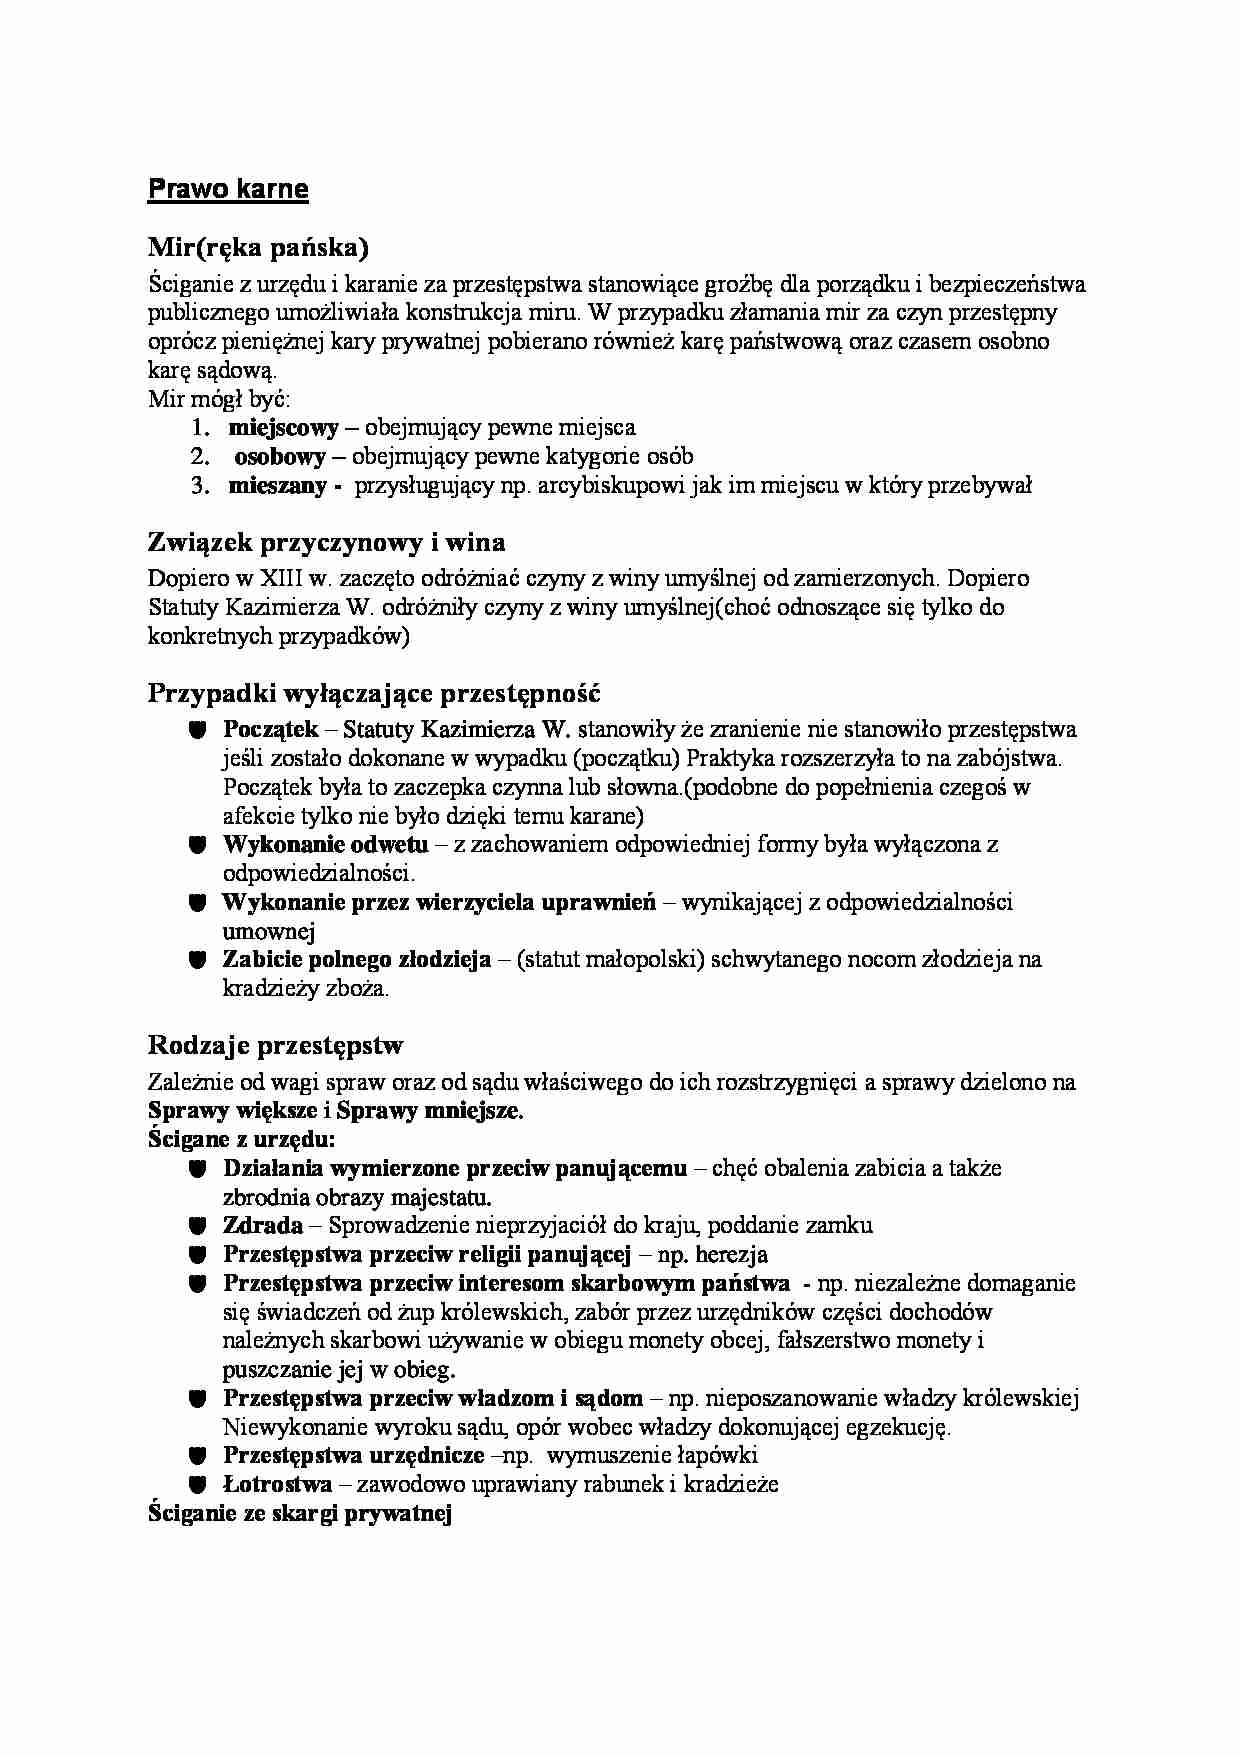 Prawo sądowe polskiego średniowiecza - Prawo karne - strona 1